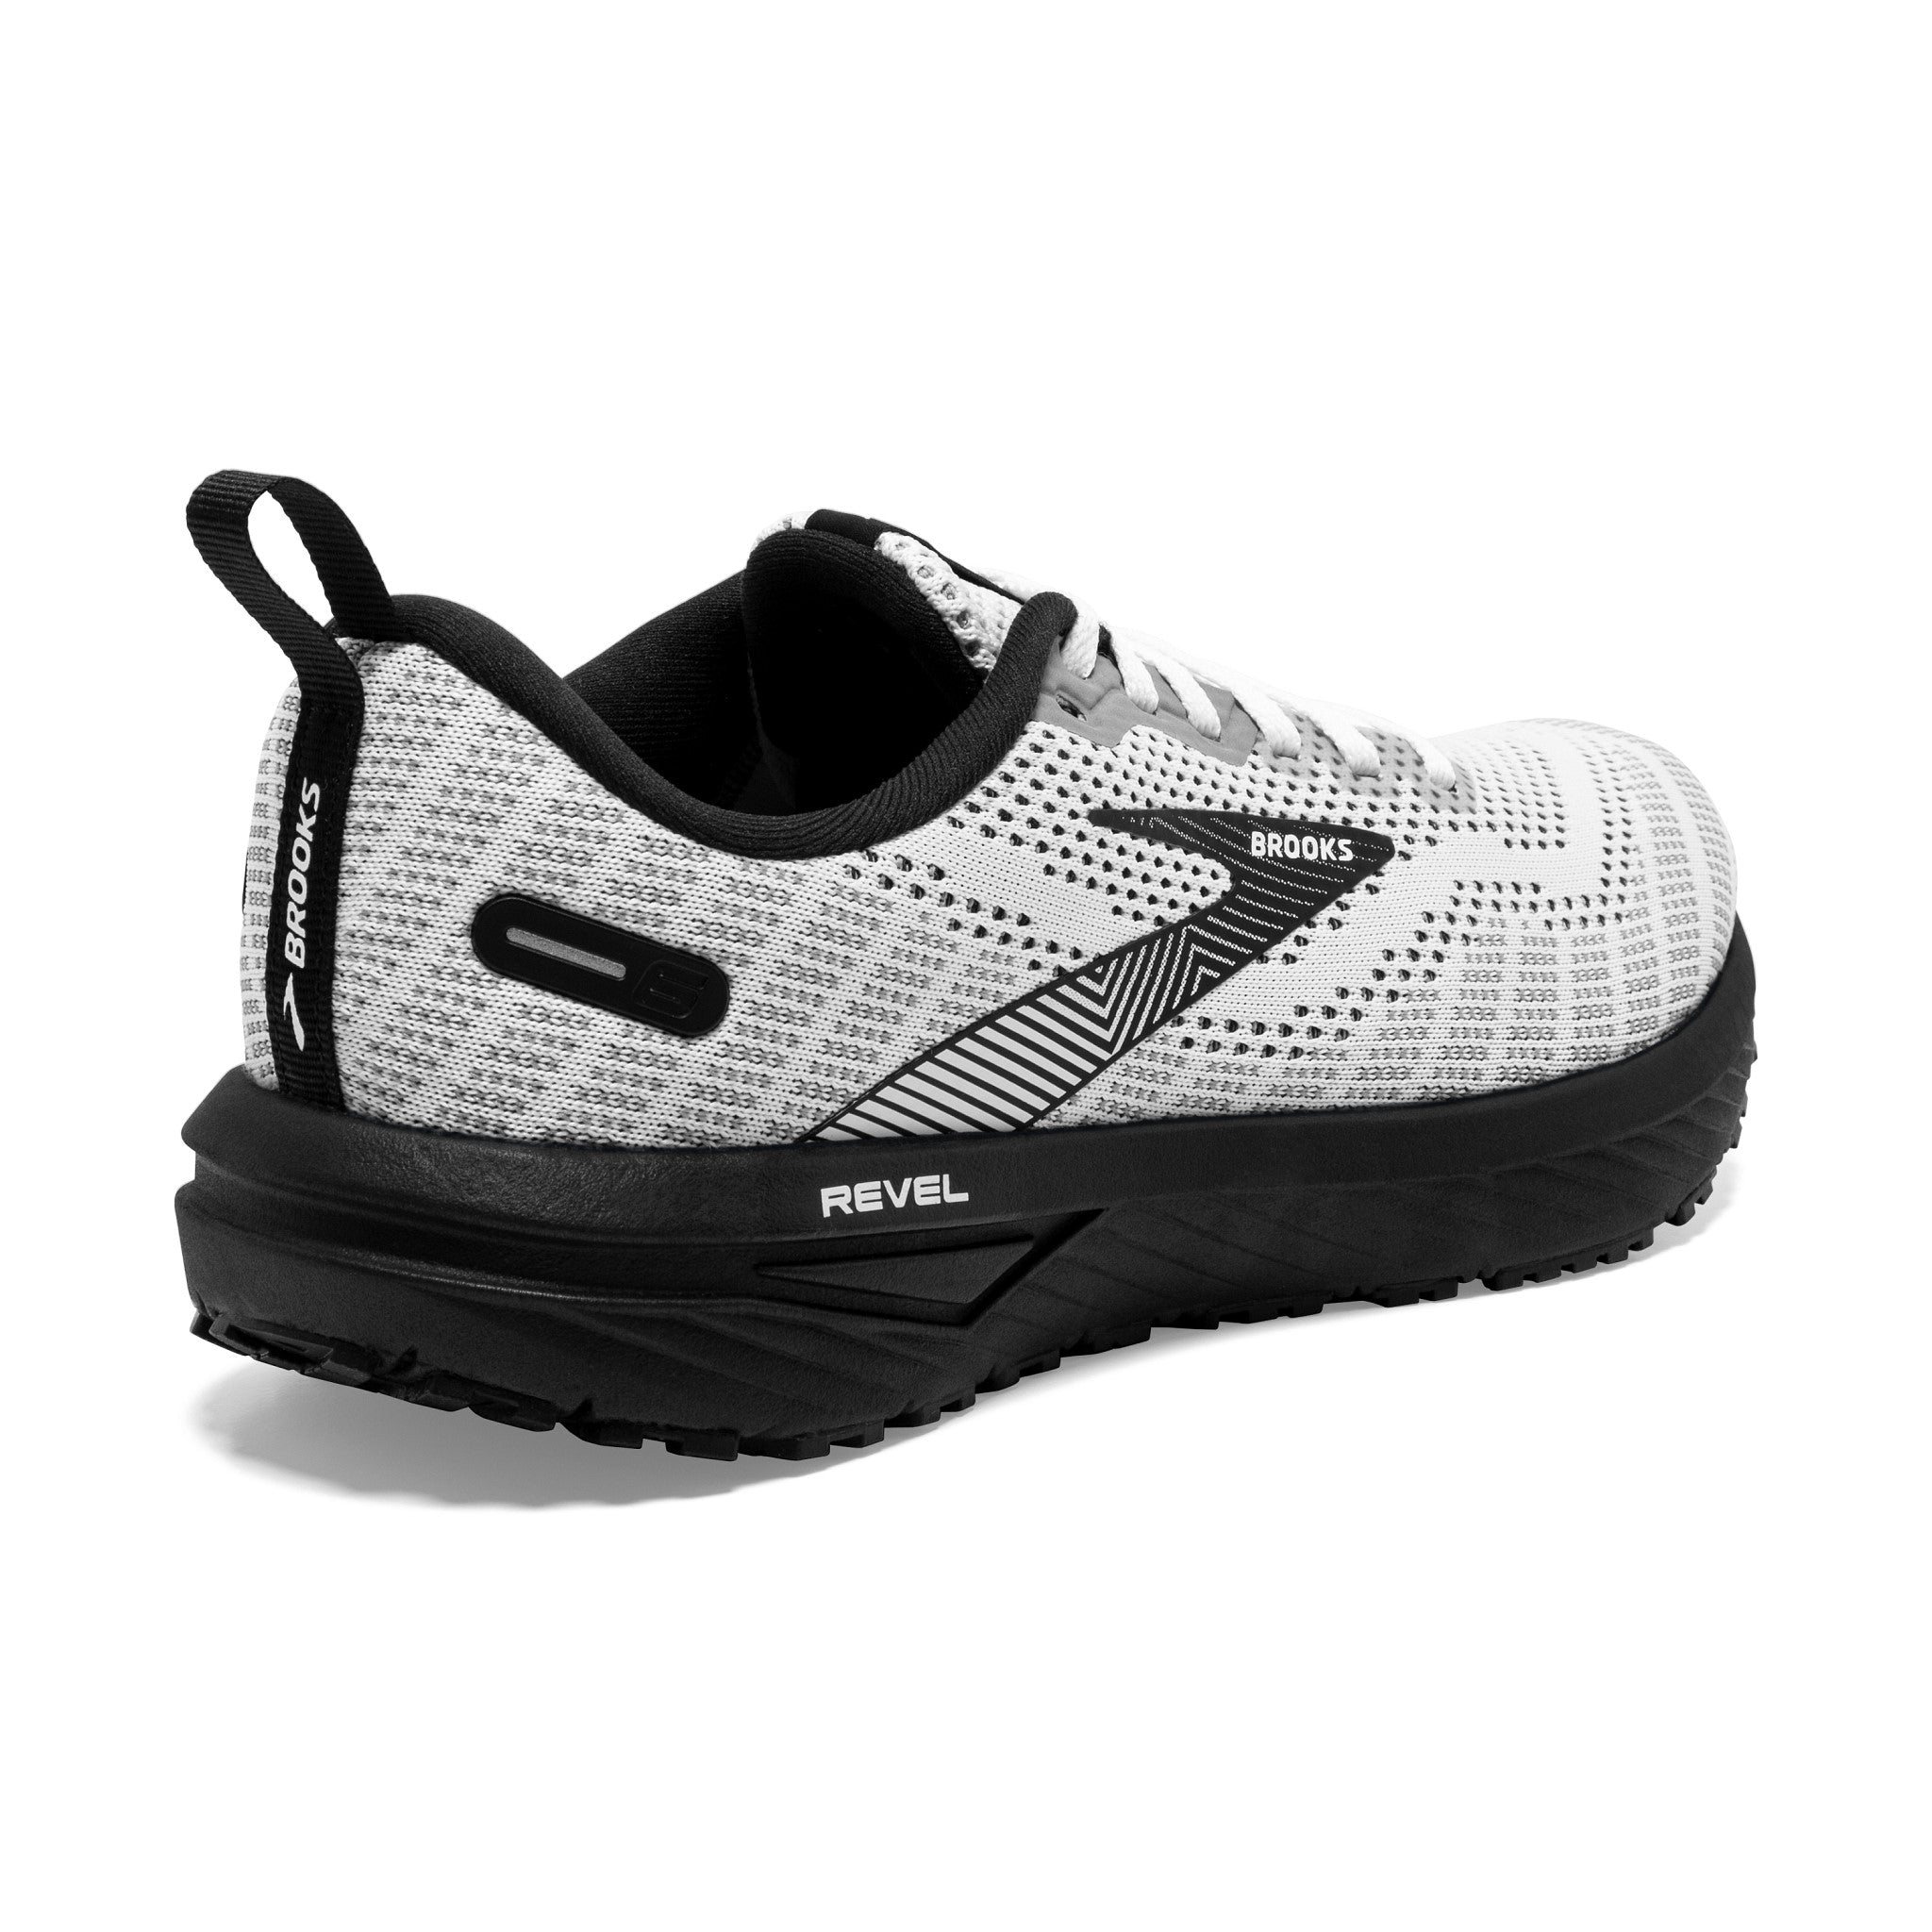 Men's Brooks Revel 6 Road Running Shoe in White/Black – Martin